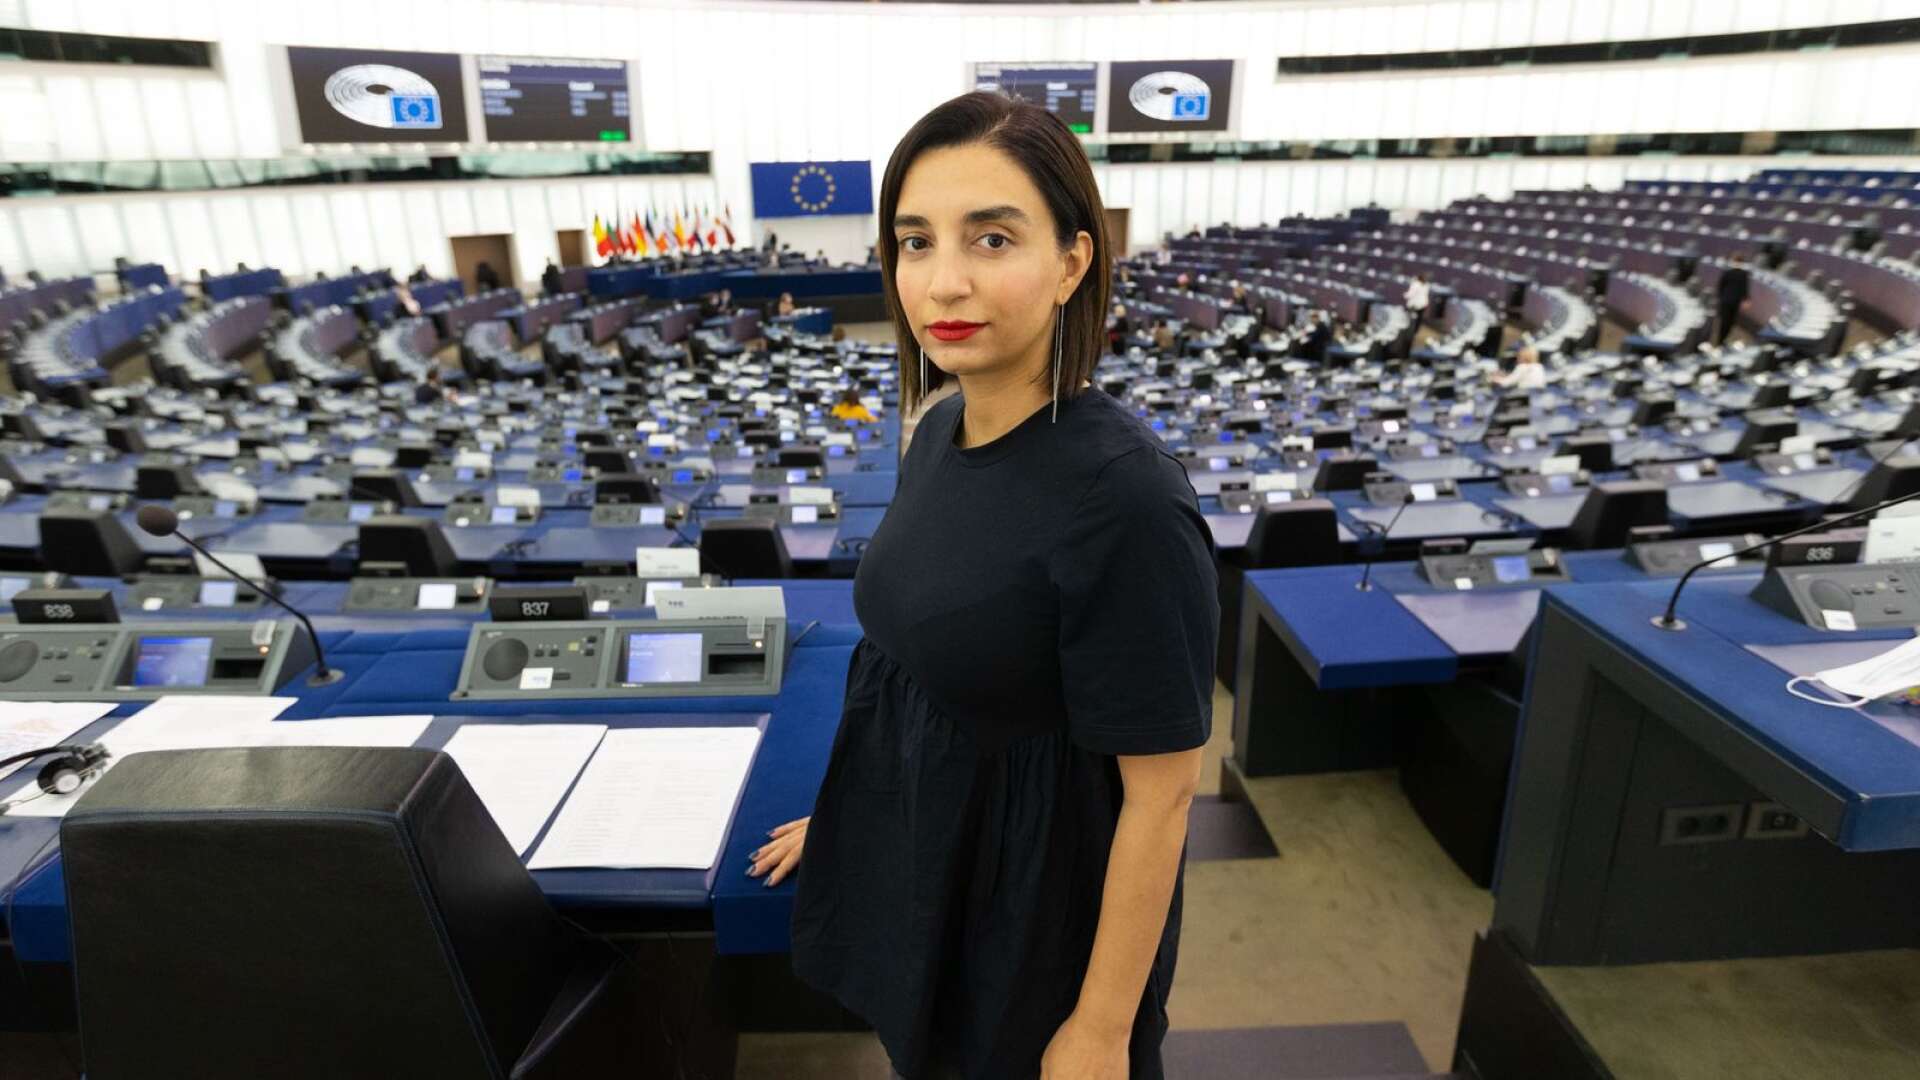 Till och med i vår Europeiska union har vi länder som nedmonterar demokratin och attackerar kvinnors rätt till vår kropp, hbtqi-personers mänskliga rättigheter och oliktänkandes möjligheter att verka fritt, skriver Evin Incir.